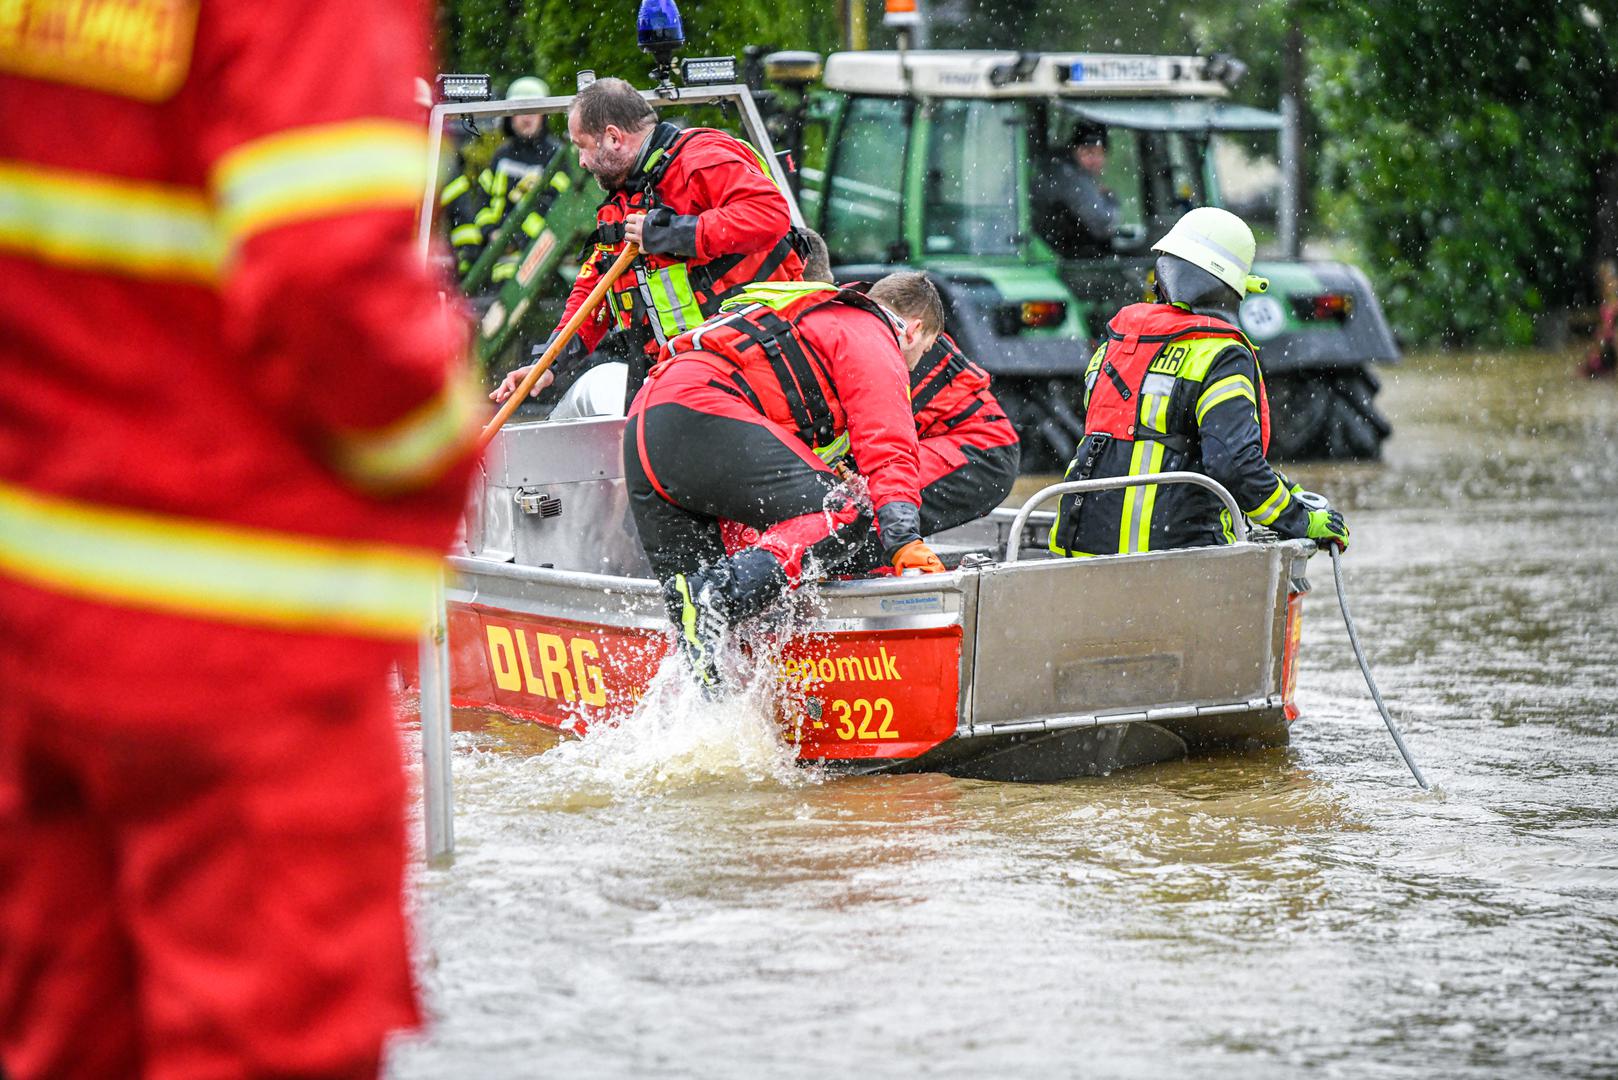 U poplavljenim područjima u bavarskom okrugu Augsburg vlasti su pozvale na evakuaciju. Stanovnici bi trebali odmah napustiti općine Kühlenthal i Allmannshofen, upozorila je tamošnja služba za izvanredne situacije. Za ljude koji ne mogu sami napustiti područje, osigurani su autobusi.